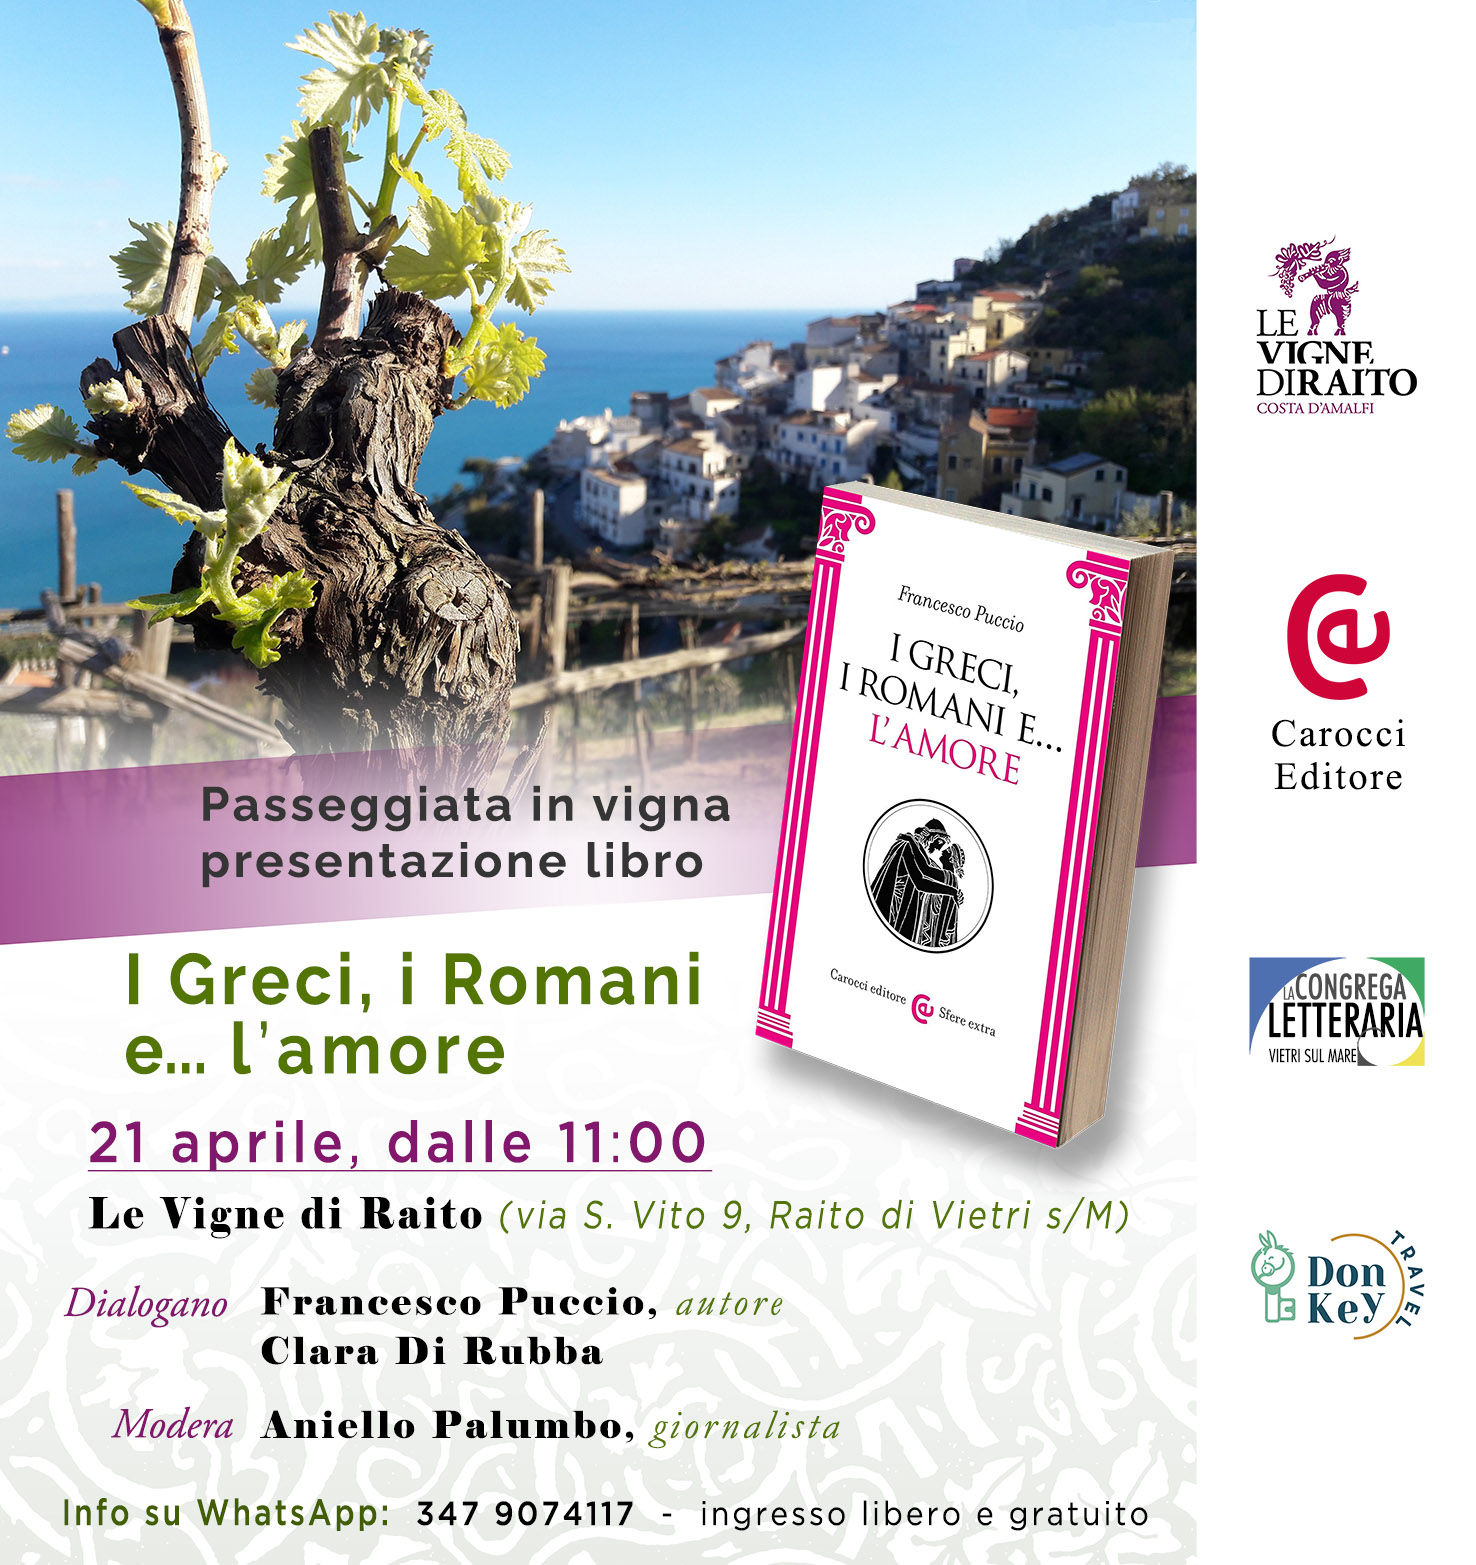 Vietri sul Mare: “Le vigne di Raito”, presentazione saggio di Francesco Puccio “I Greci, i Romani e…l’amore”